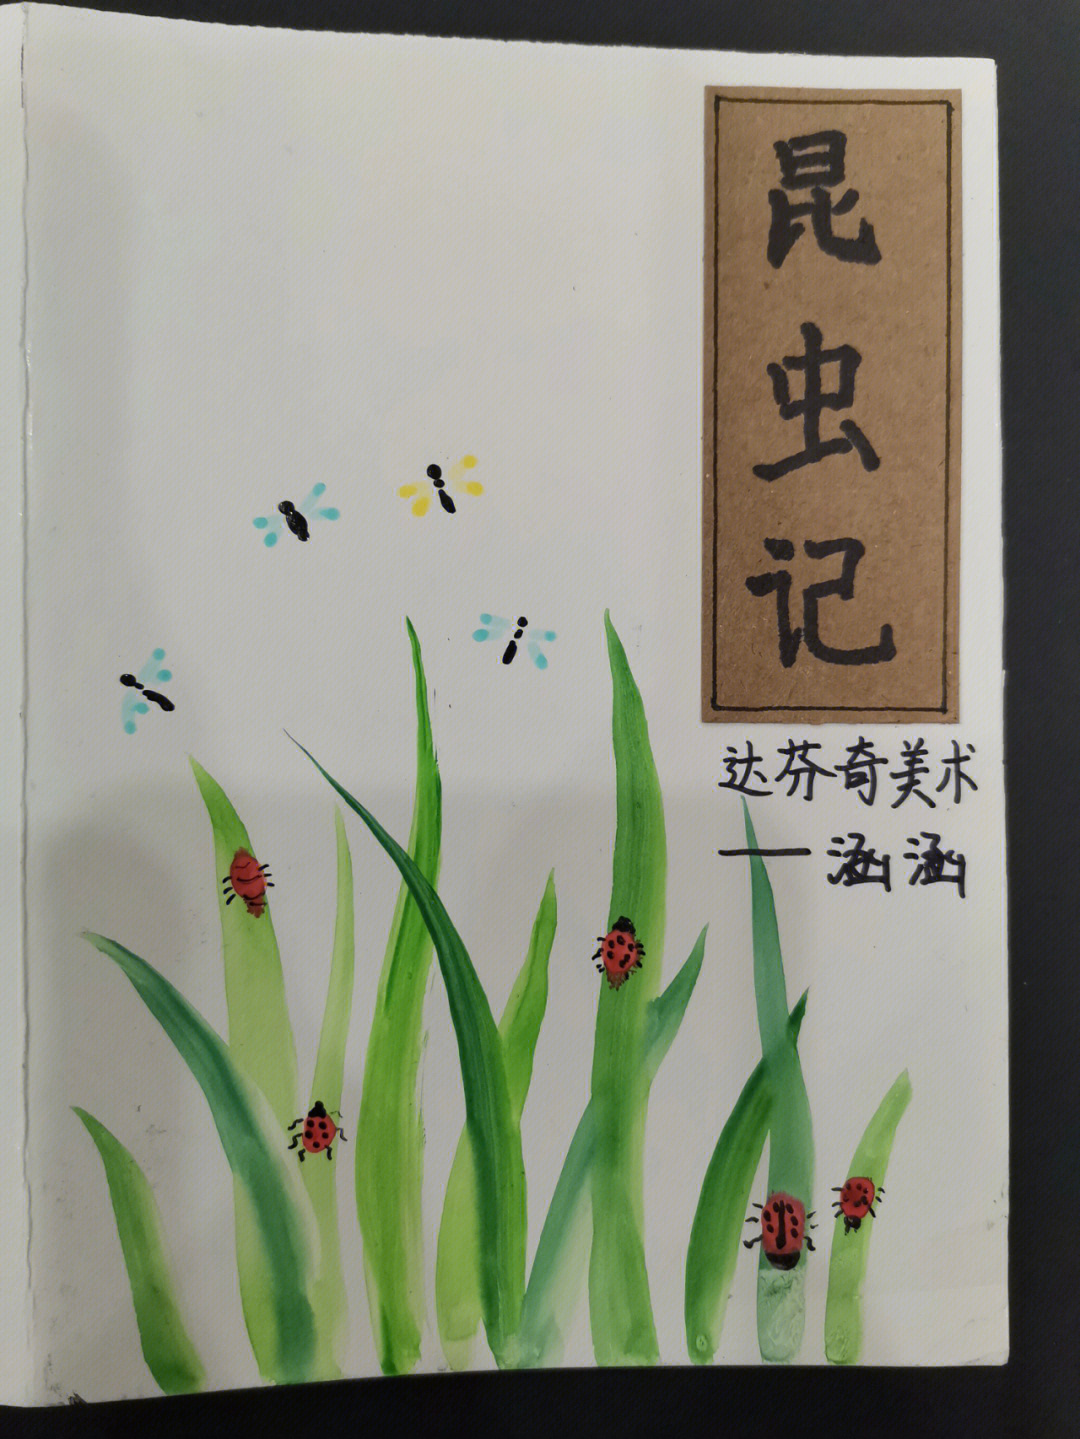 自制昆虫记封面设计图片